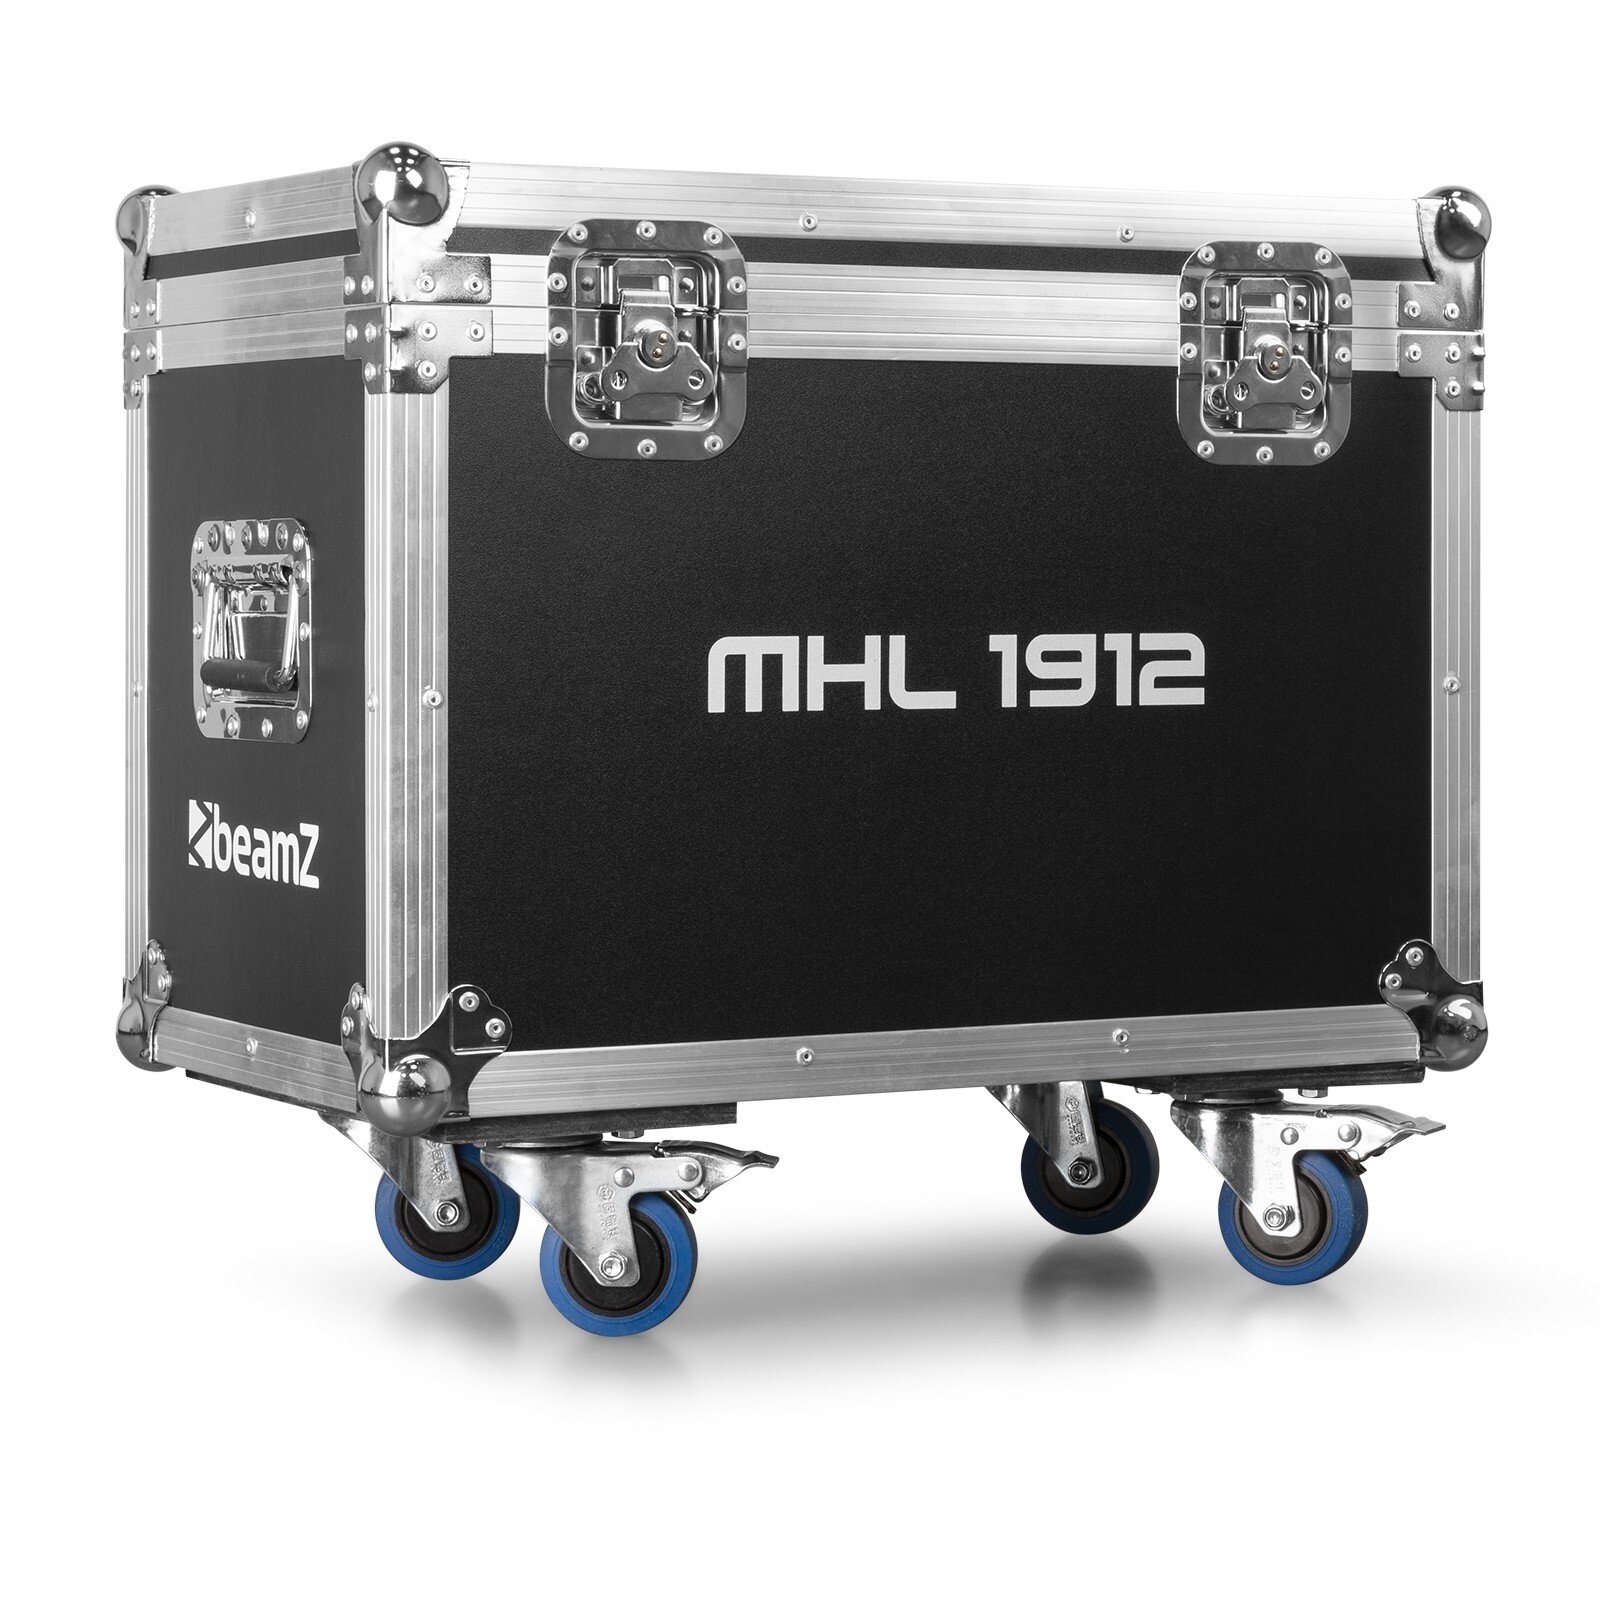 FC1912 transportcase för 2x MHL1912